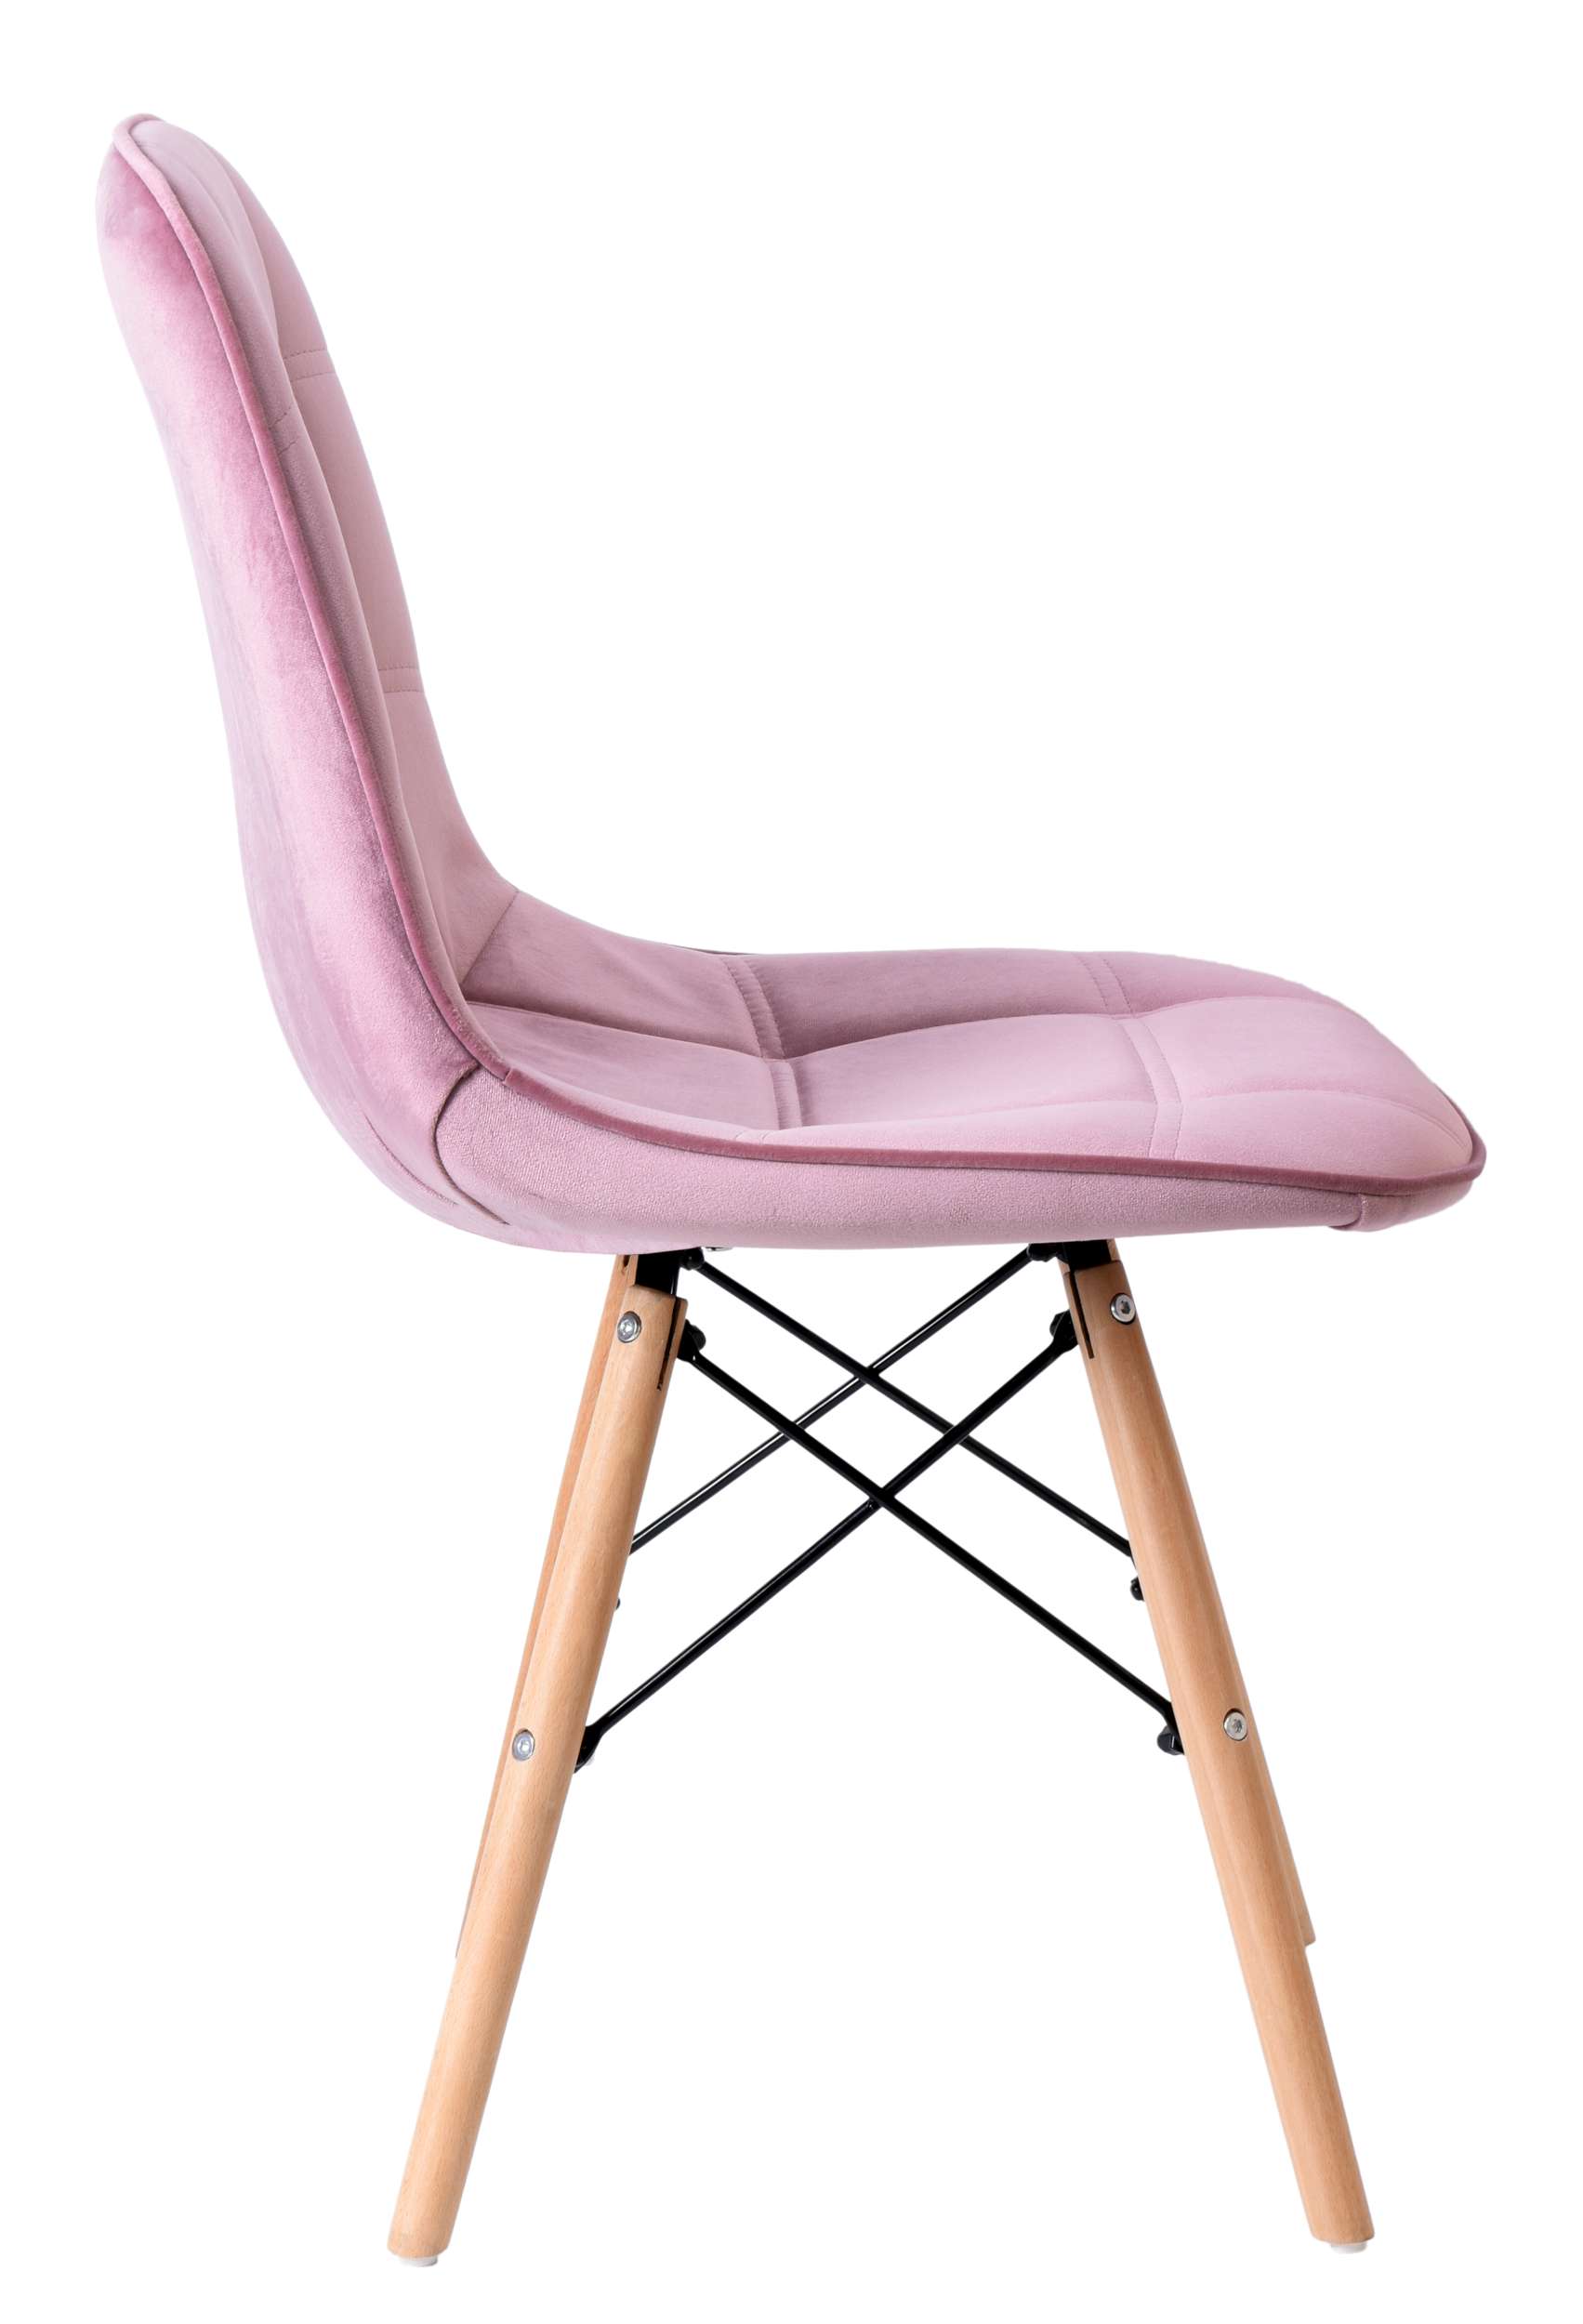 krzeslo nowoczesne lyon